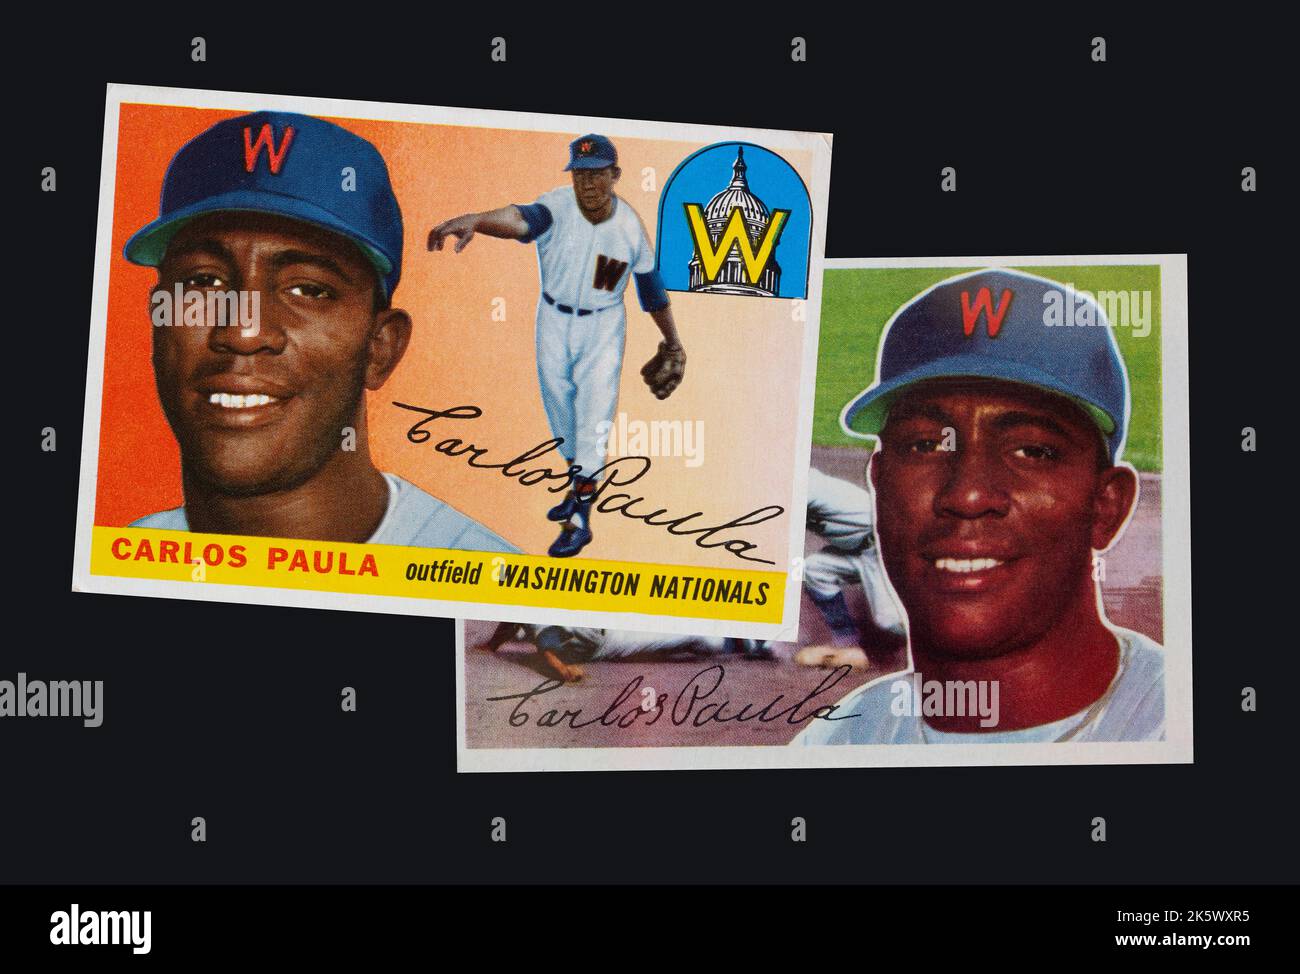 1955 et 1956 Washington nationaux de baseball cartes de l'outfielder Carlos Paula - sur 6 septembre 1954 Carlos Paula Conill est devenu le premier joueur noir Banque D'Images